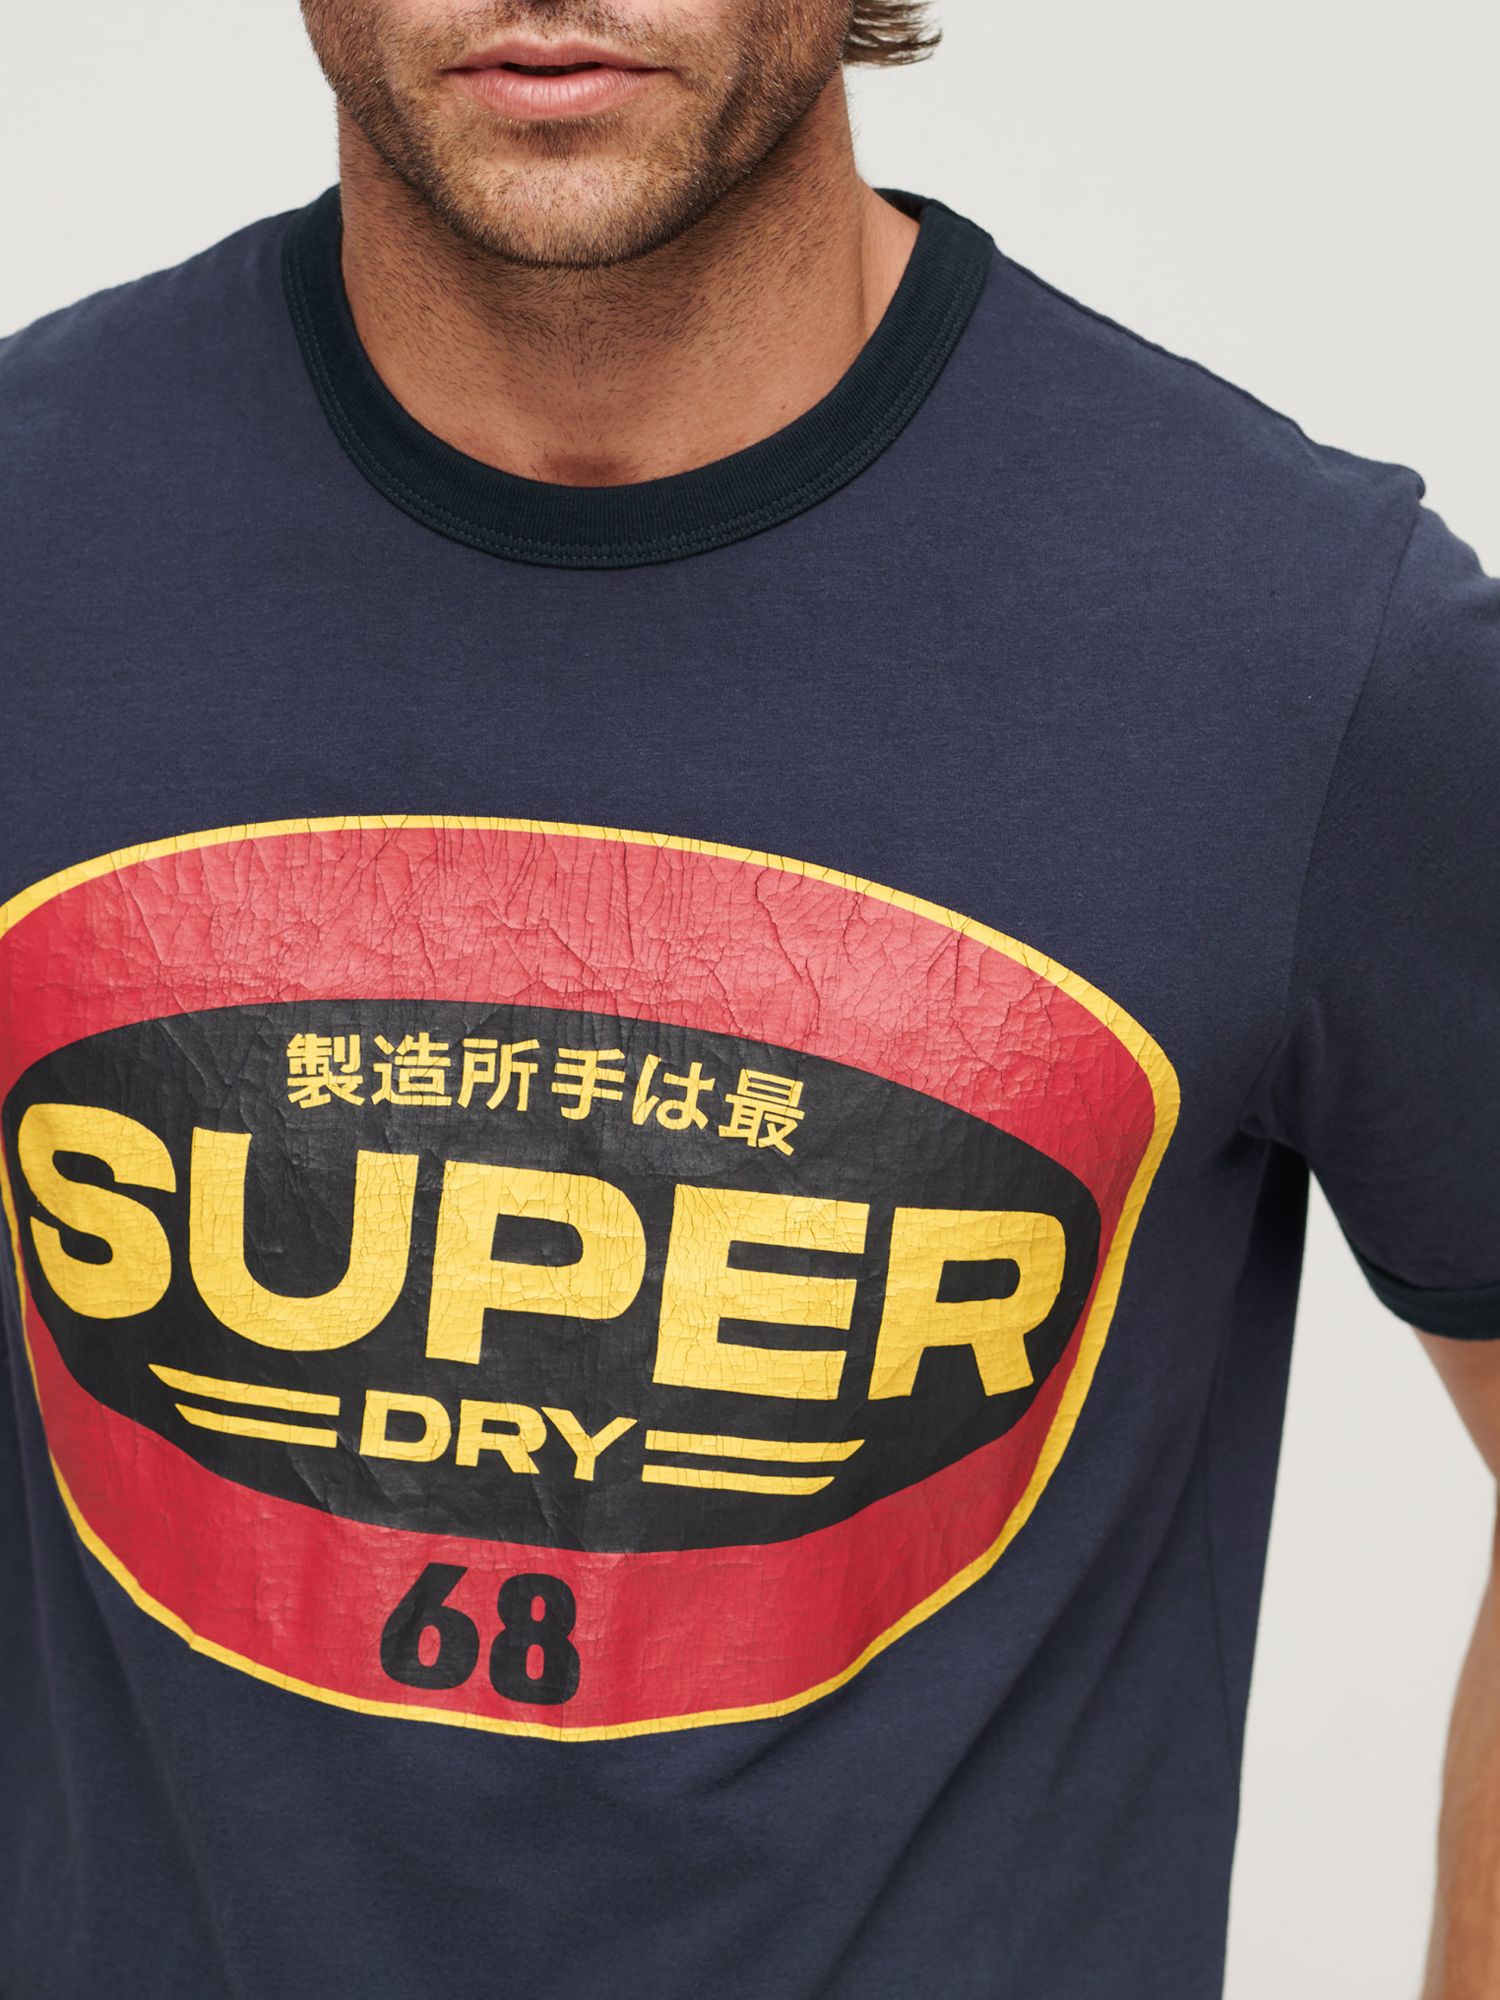 Buy Superdry Workwear Gasoline Logo T-Shirt Online at johnlewis.com